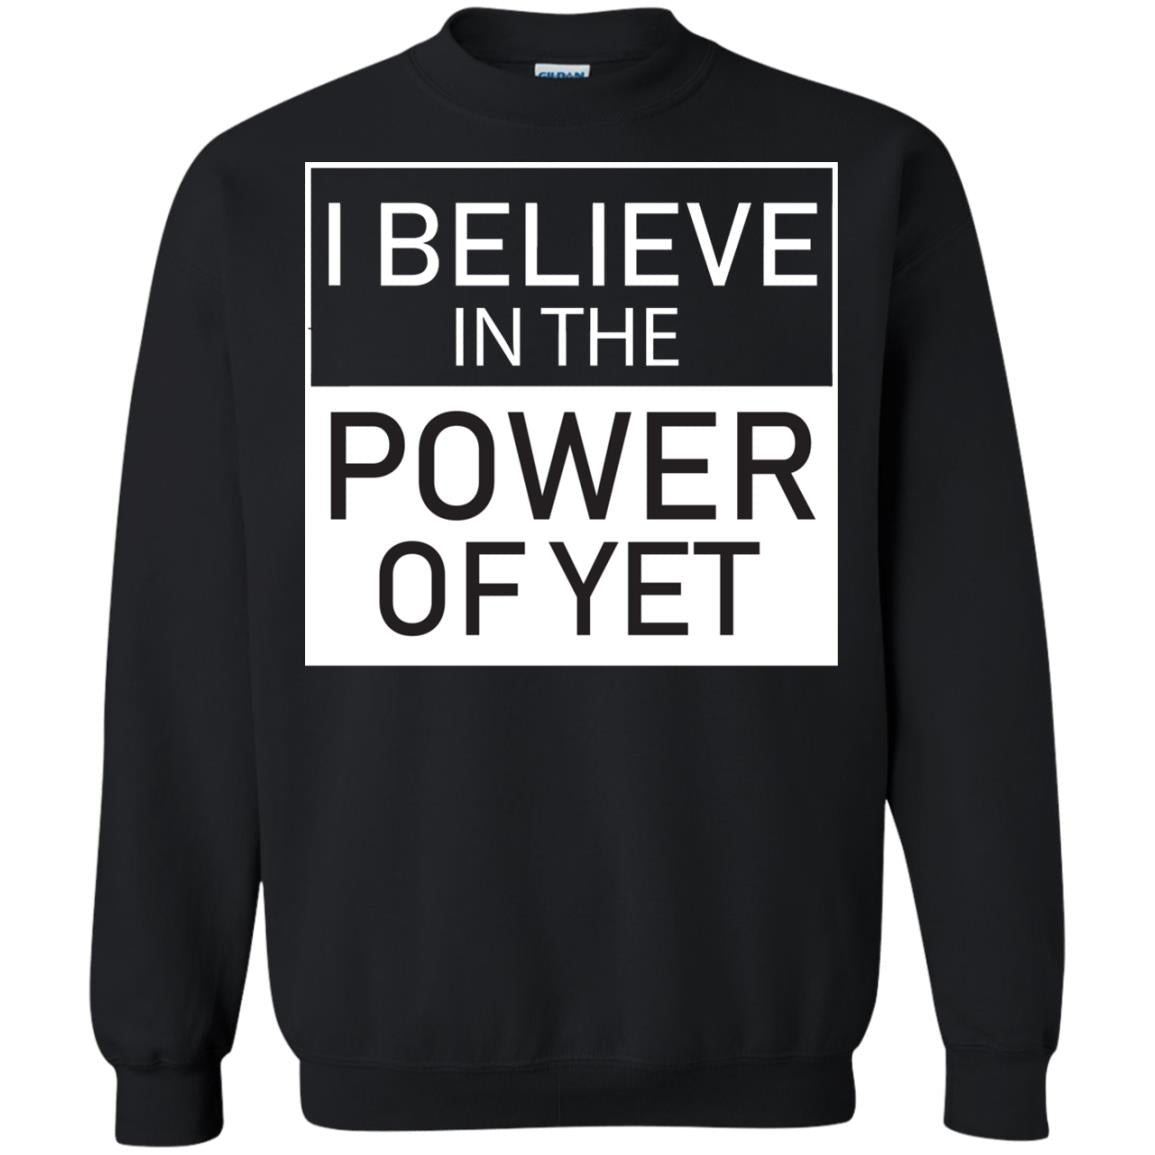 I Believe In The Power Of Yet T-shirtG180 Gildan Crewneck Pullover Sweatshirt 8 oz.